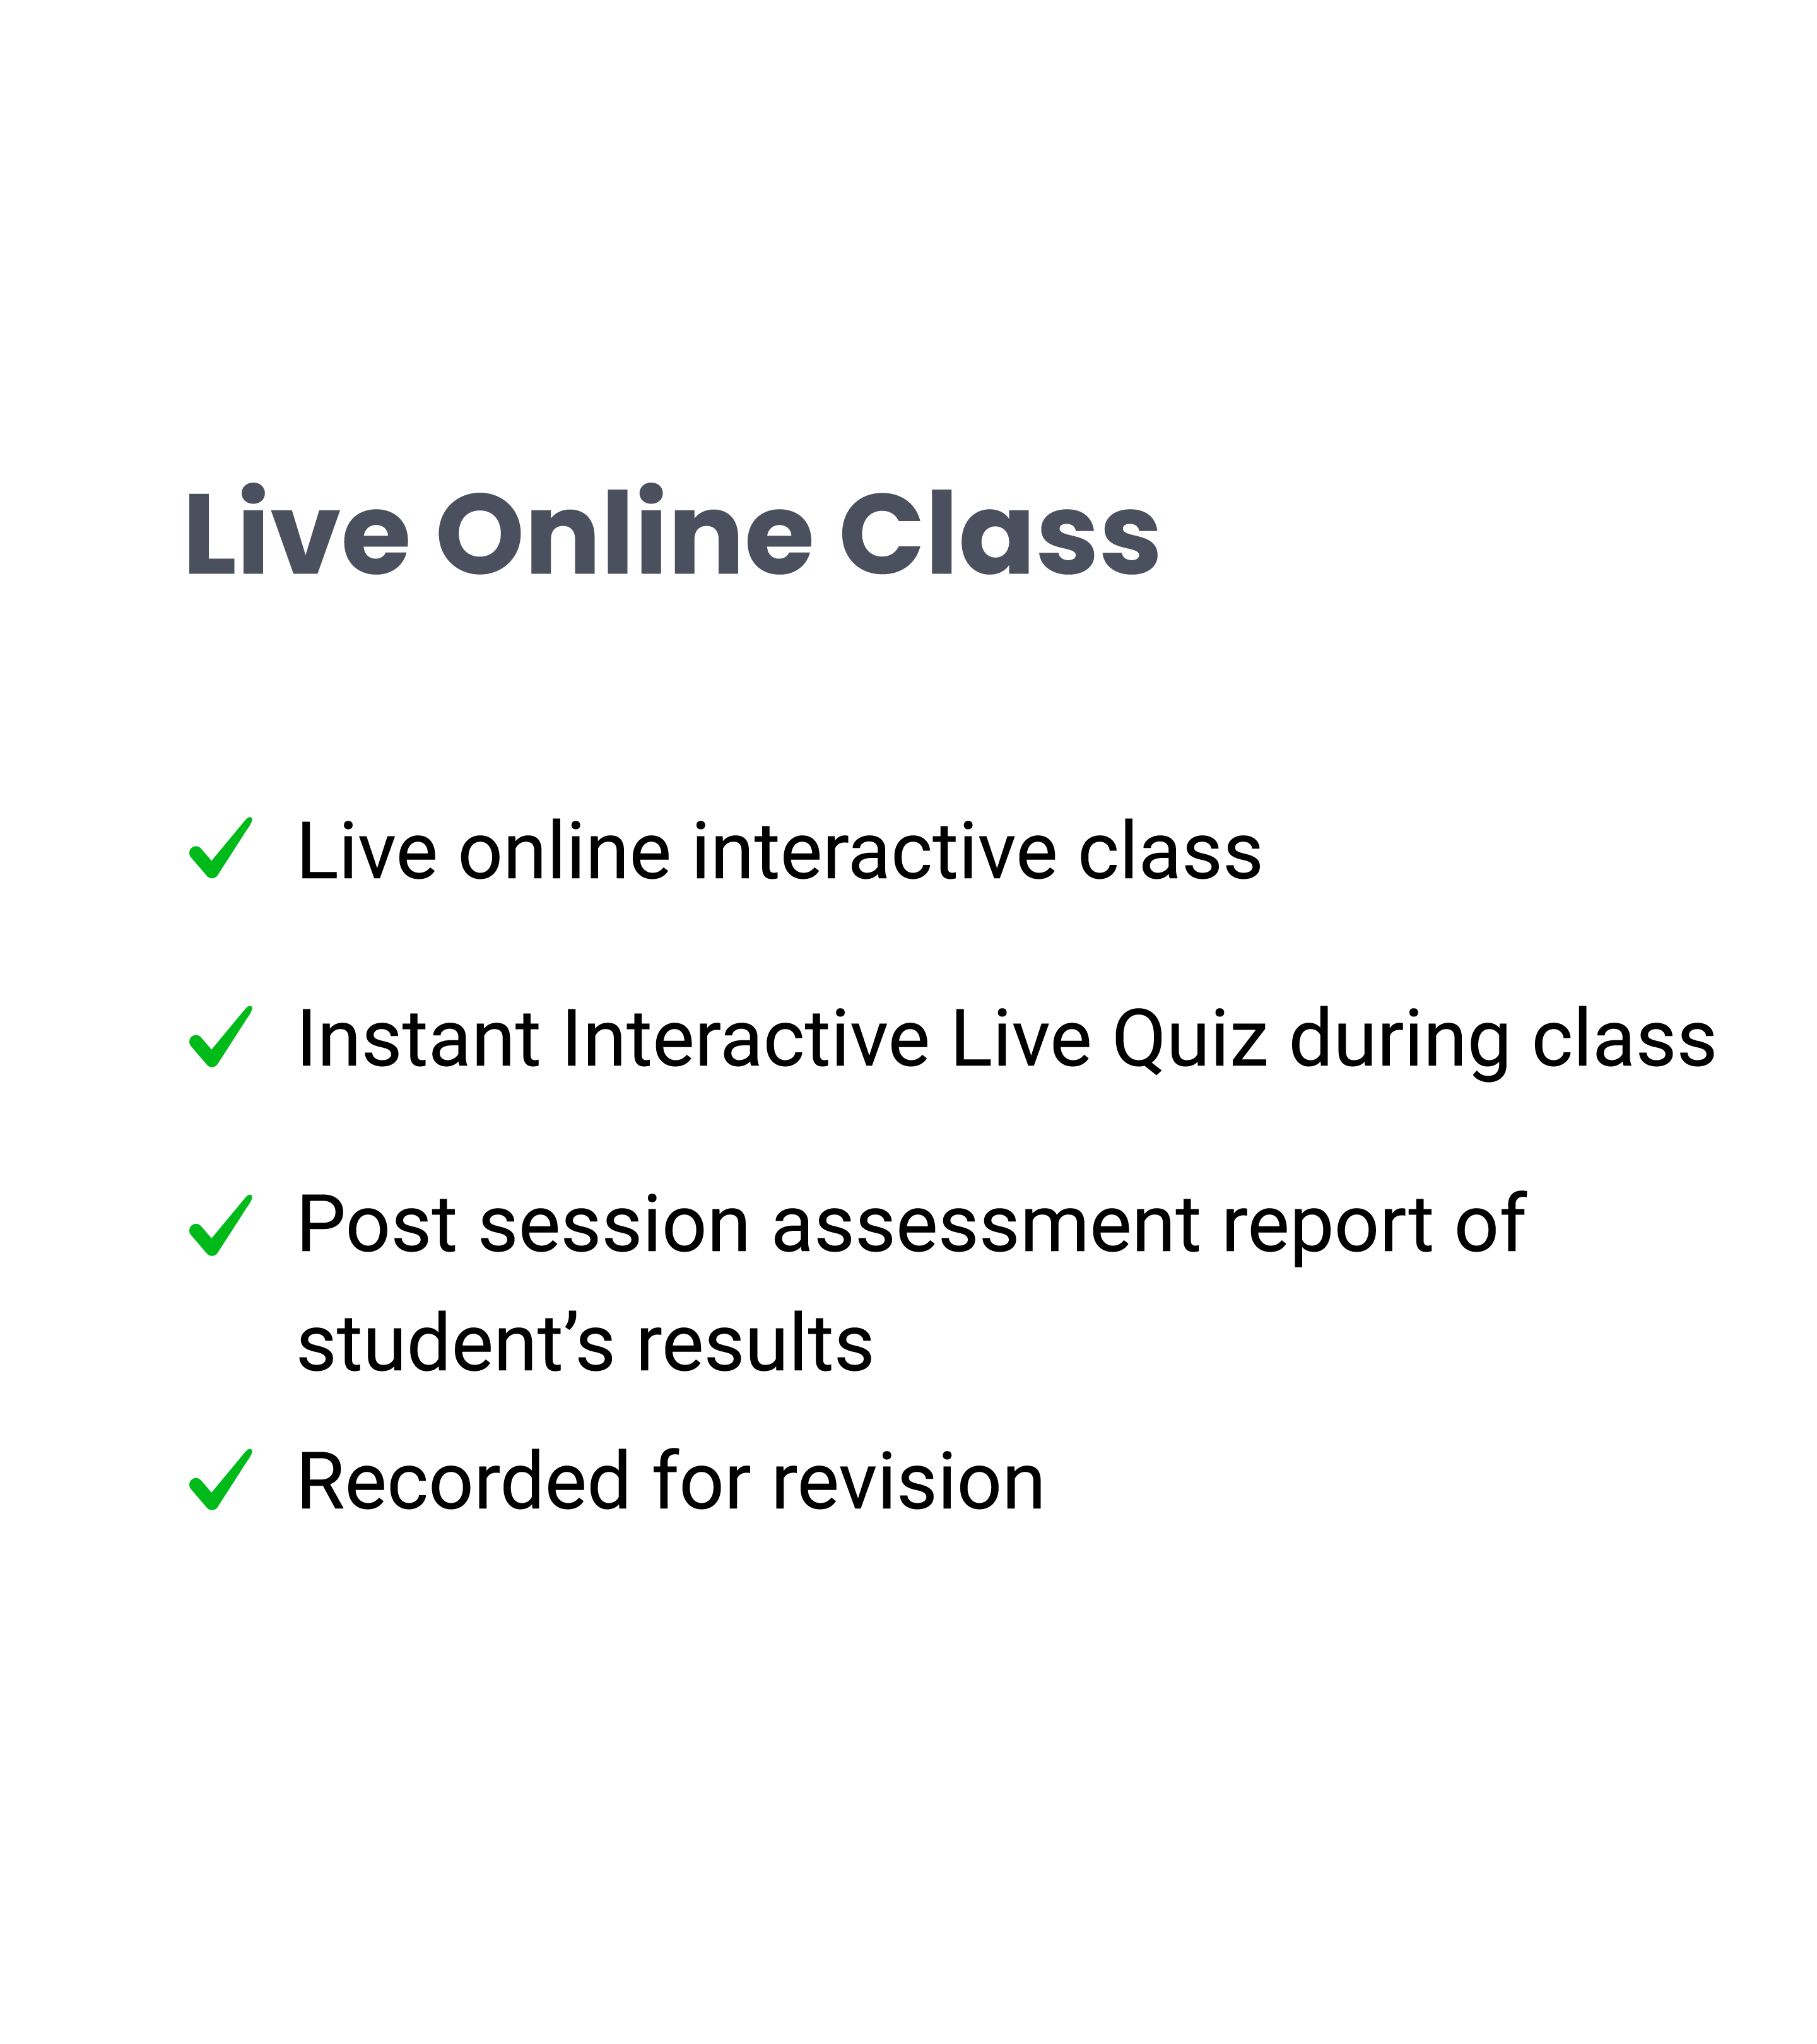 Live online classes